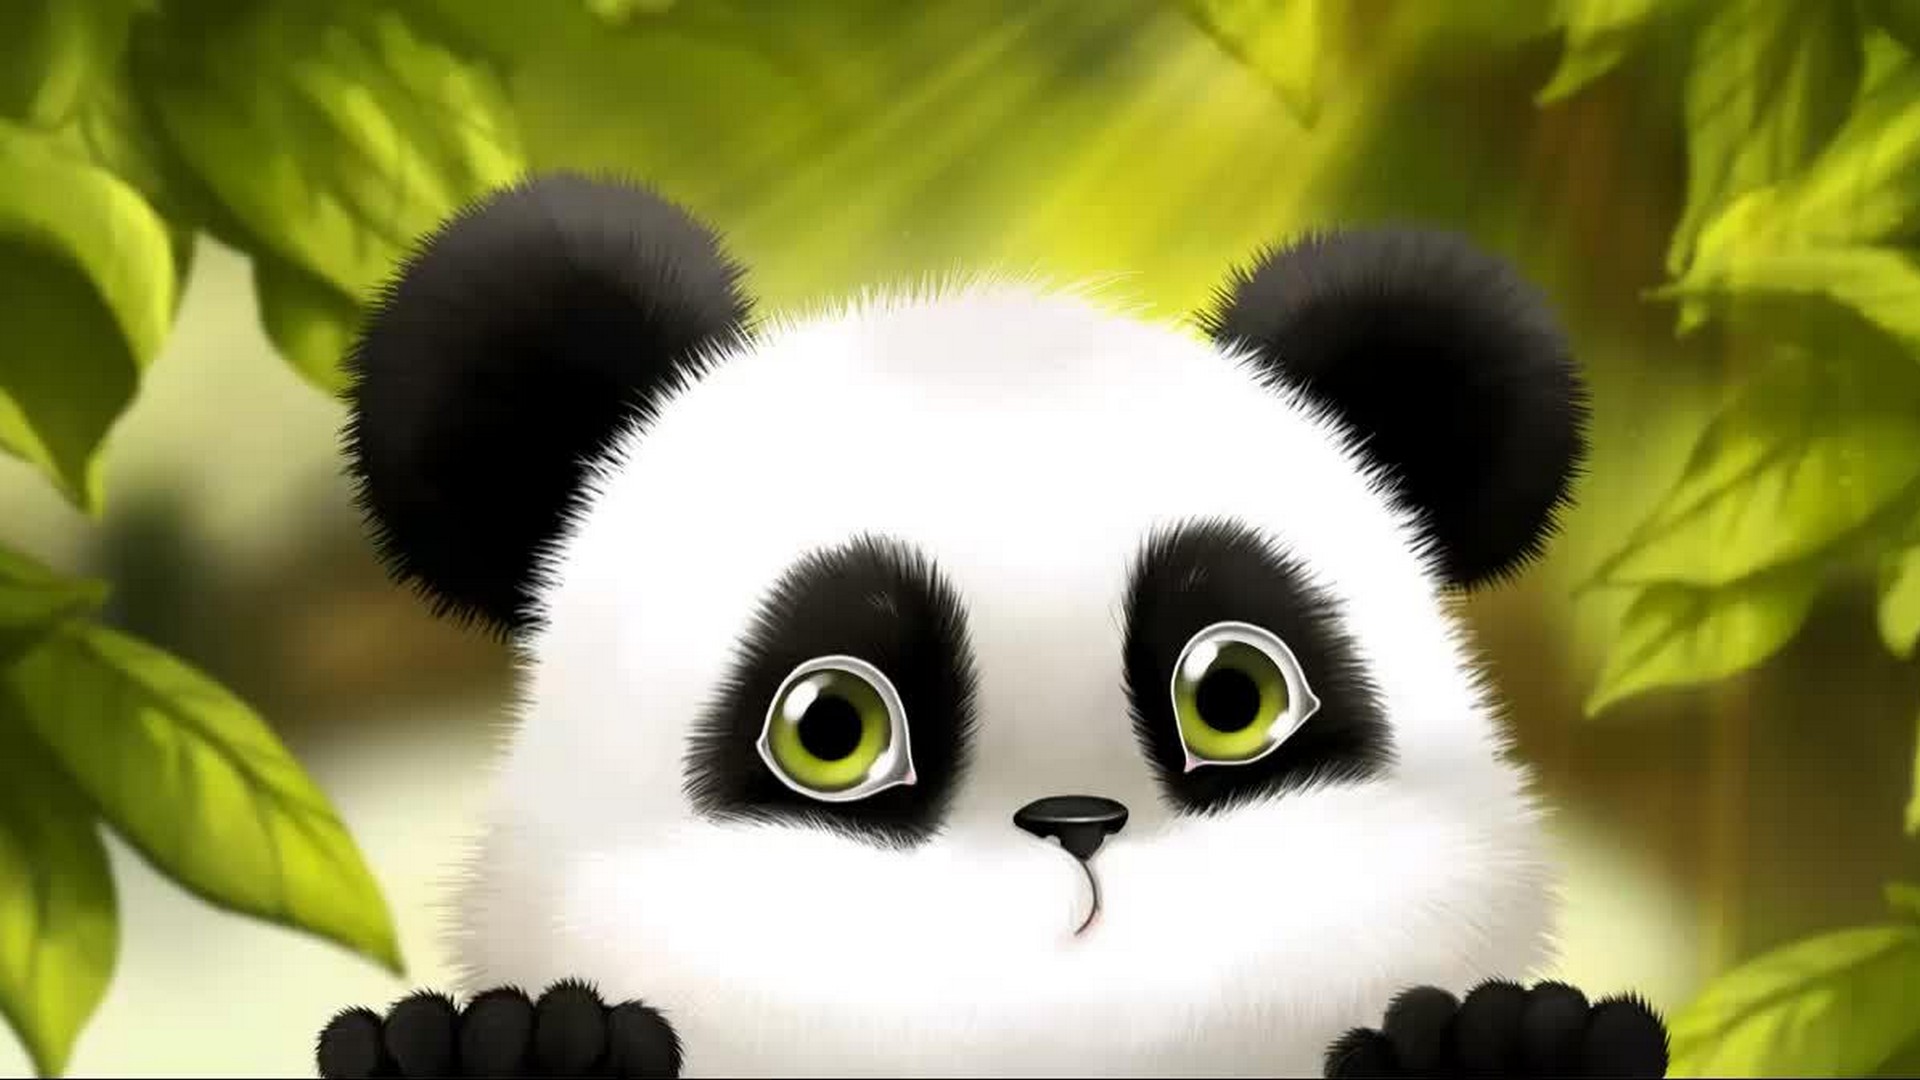 Cute Baby Panda Cartoon Wallpaper 1920x1080